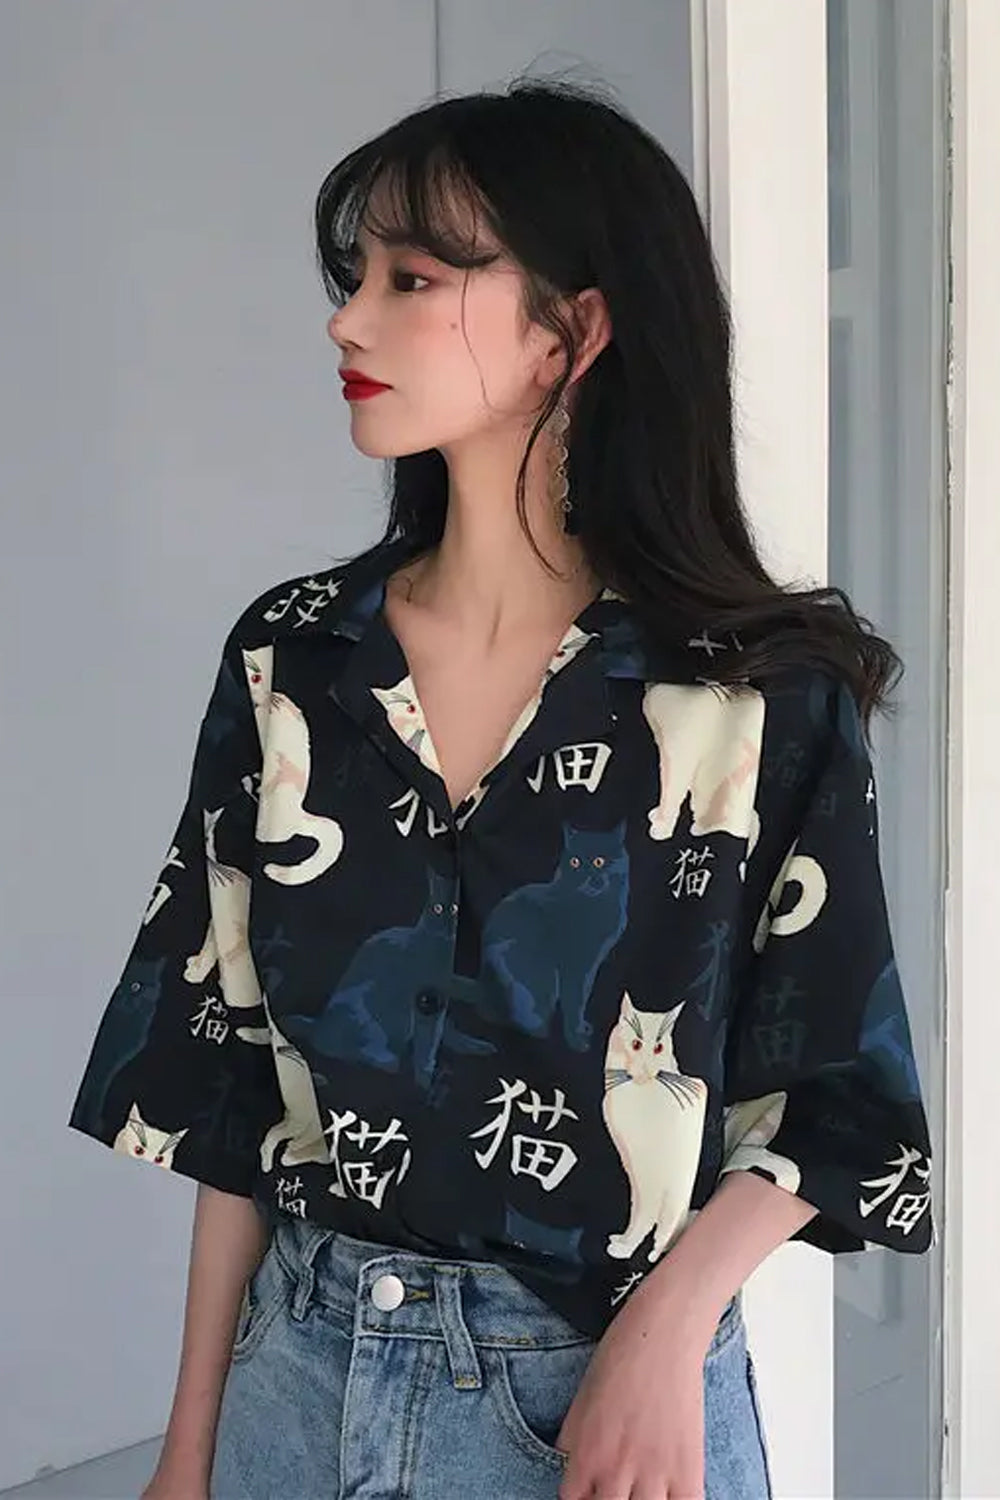 Short Sleeve Cute Cat Hawaiian Blouse Shirts